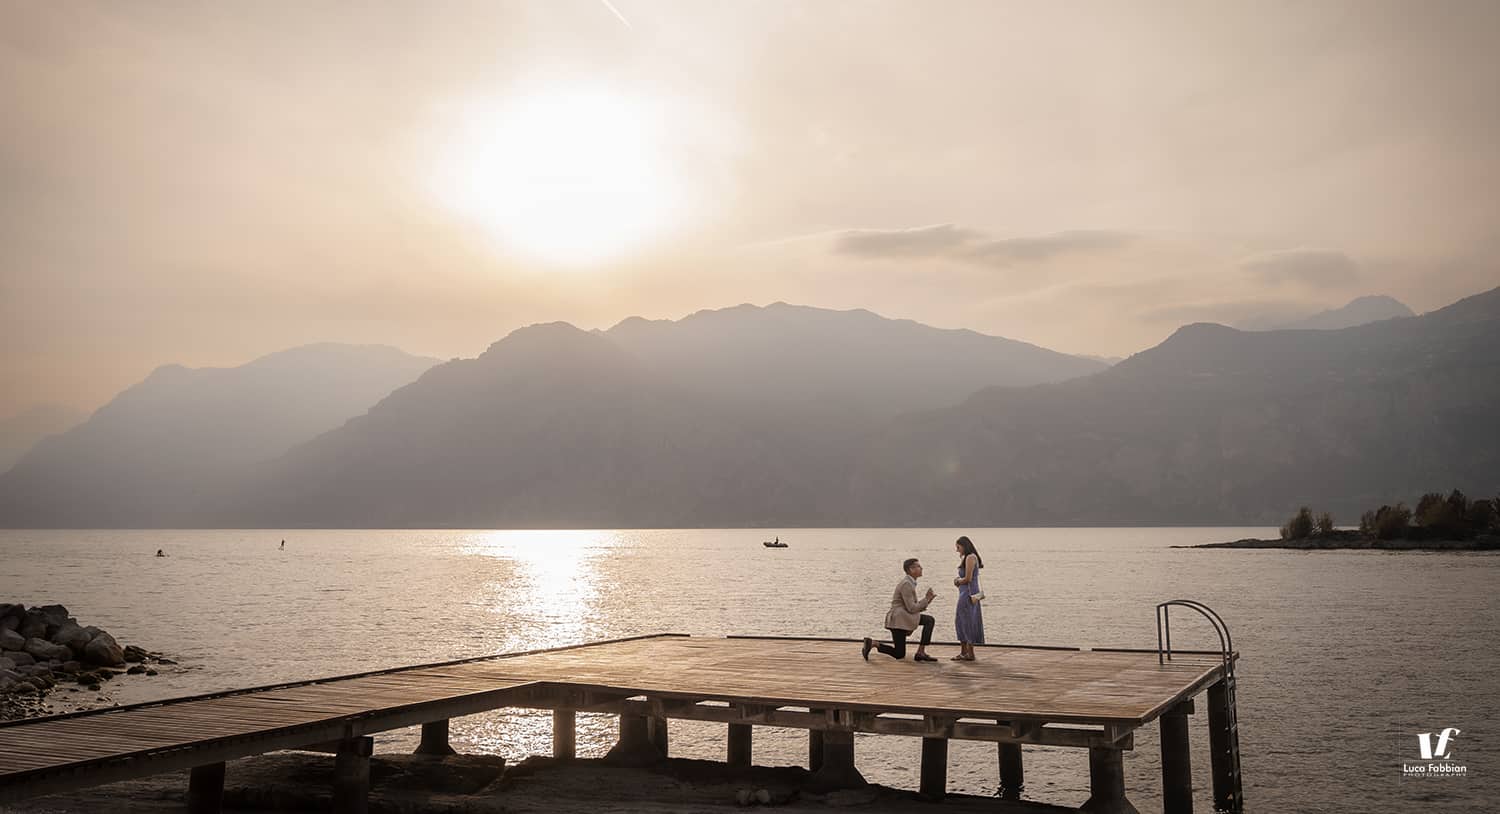 Servizio fotografico per proposta di matrimonio a Malcesine, lago di Garda